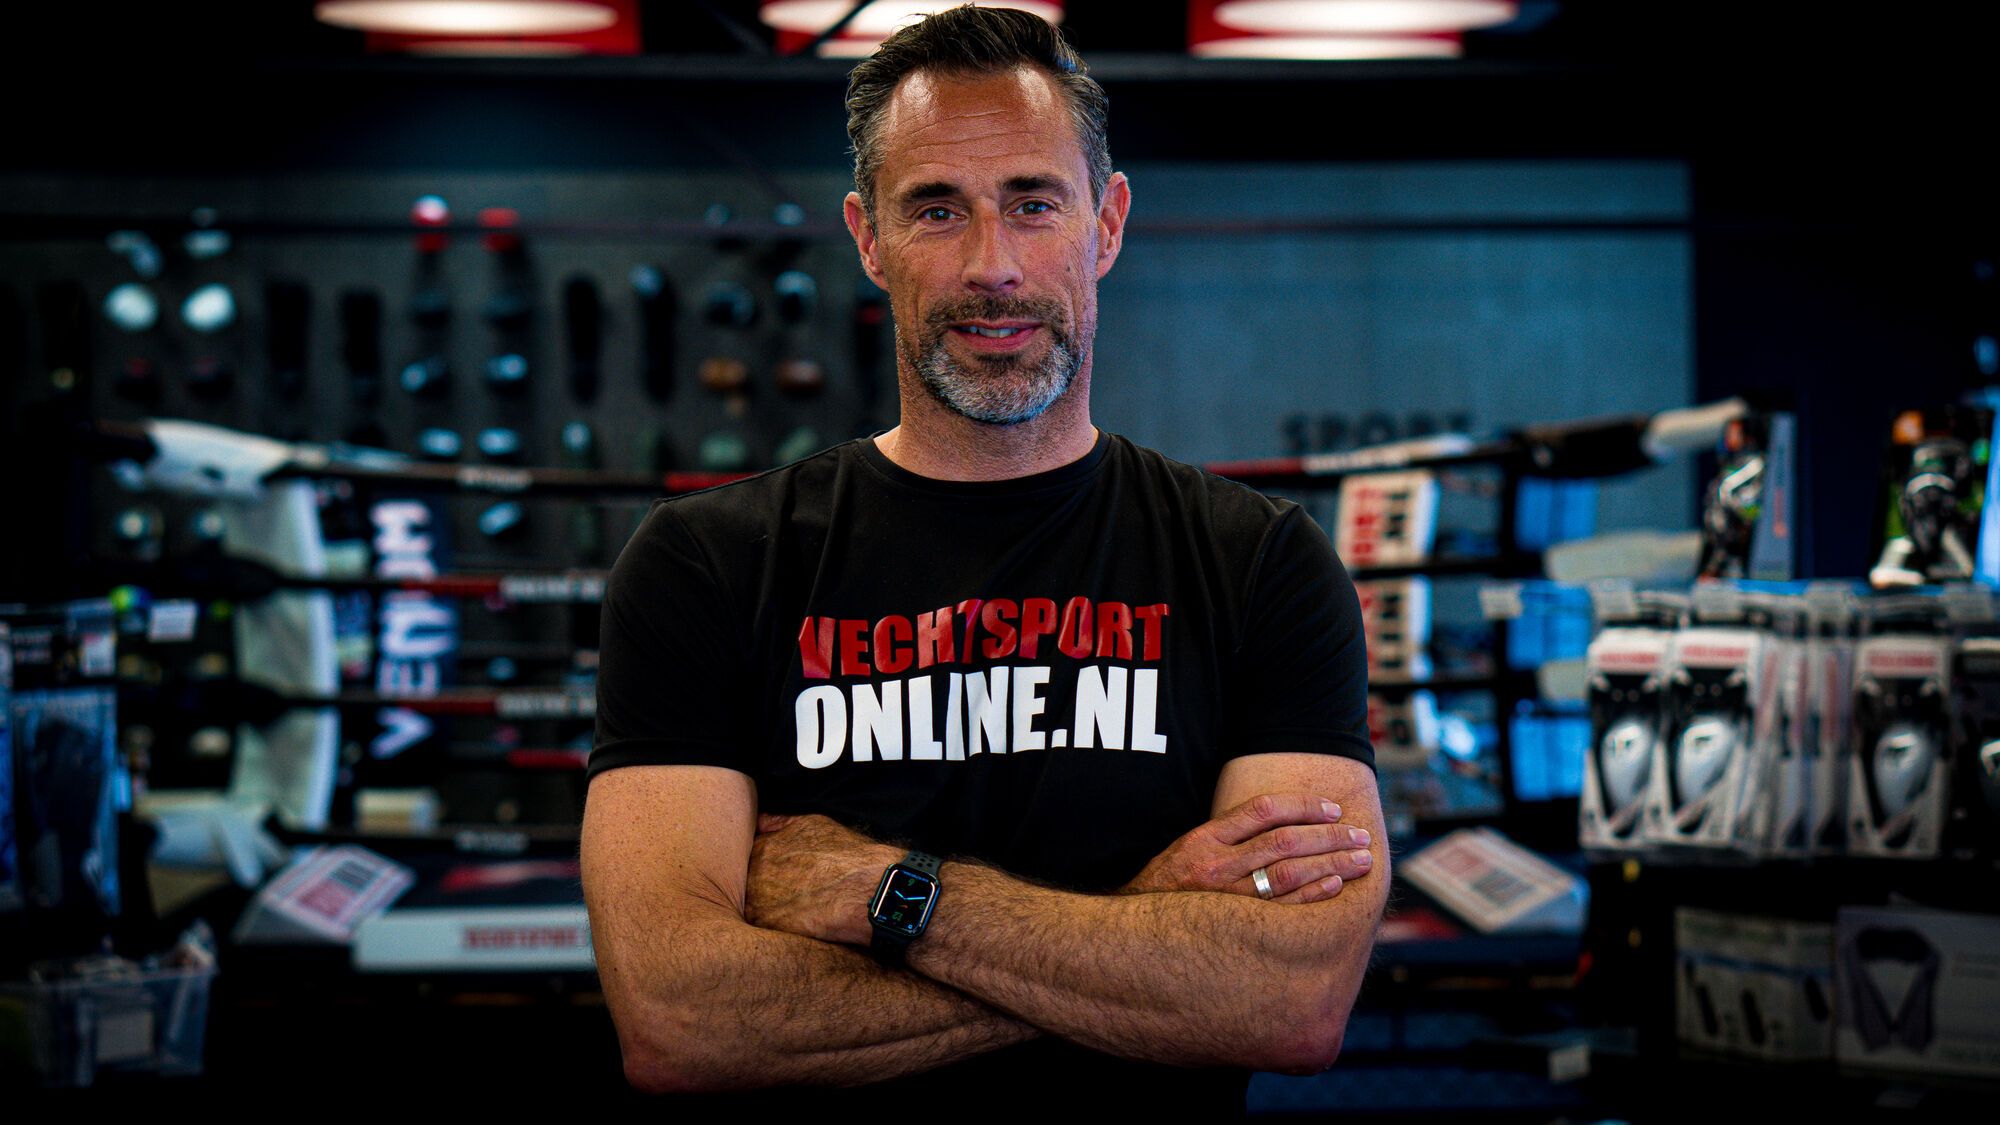 stem vuist Technologie De grootste vechtsportwinkel van Europa - Vechtsportonline.nl